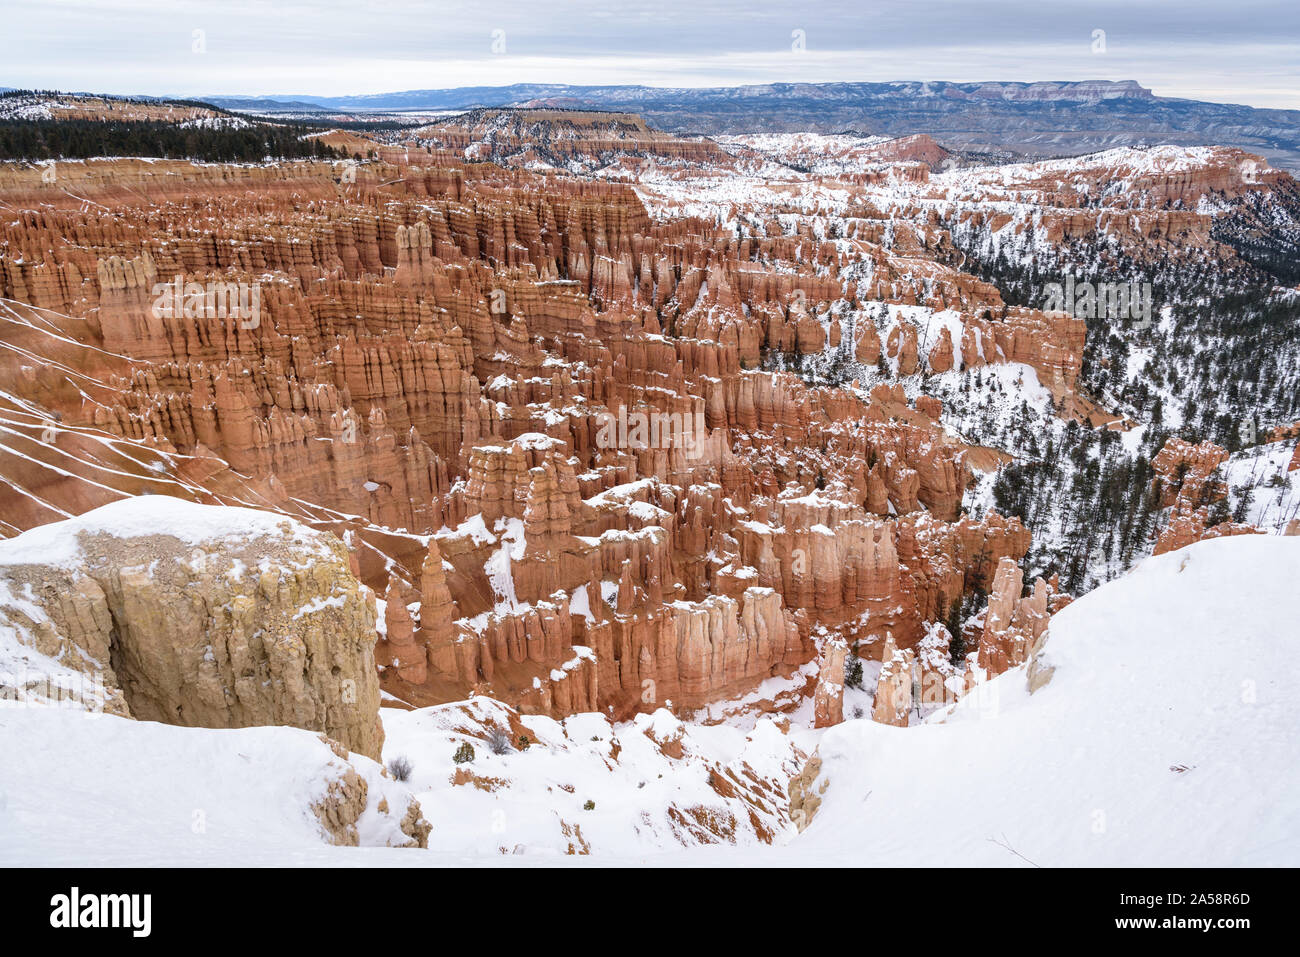 De belles montagnes couvertes de neige pendant la période d'hiver dans le Parc National de Bryce Canyon, Utah, États-Unis d'Amérique Banque D'Images